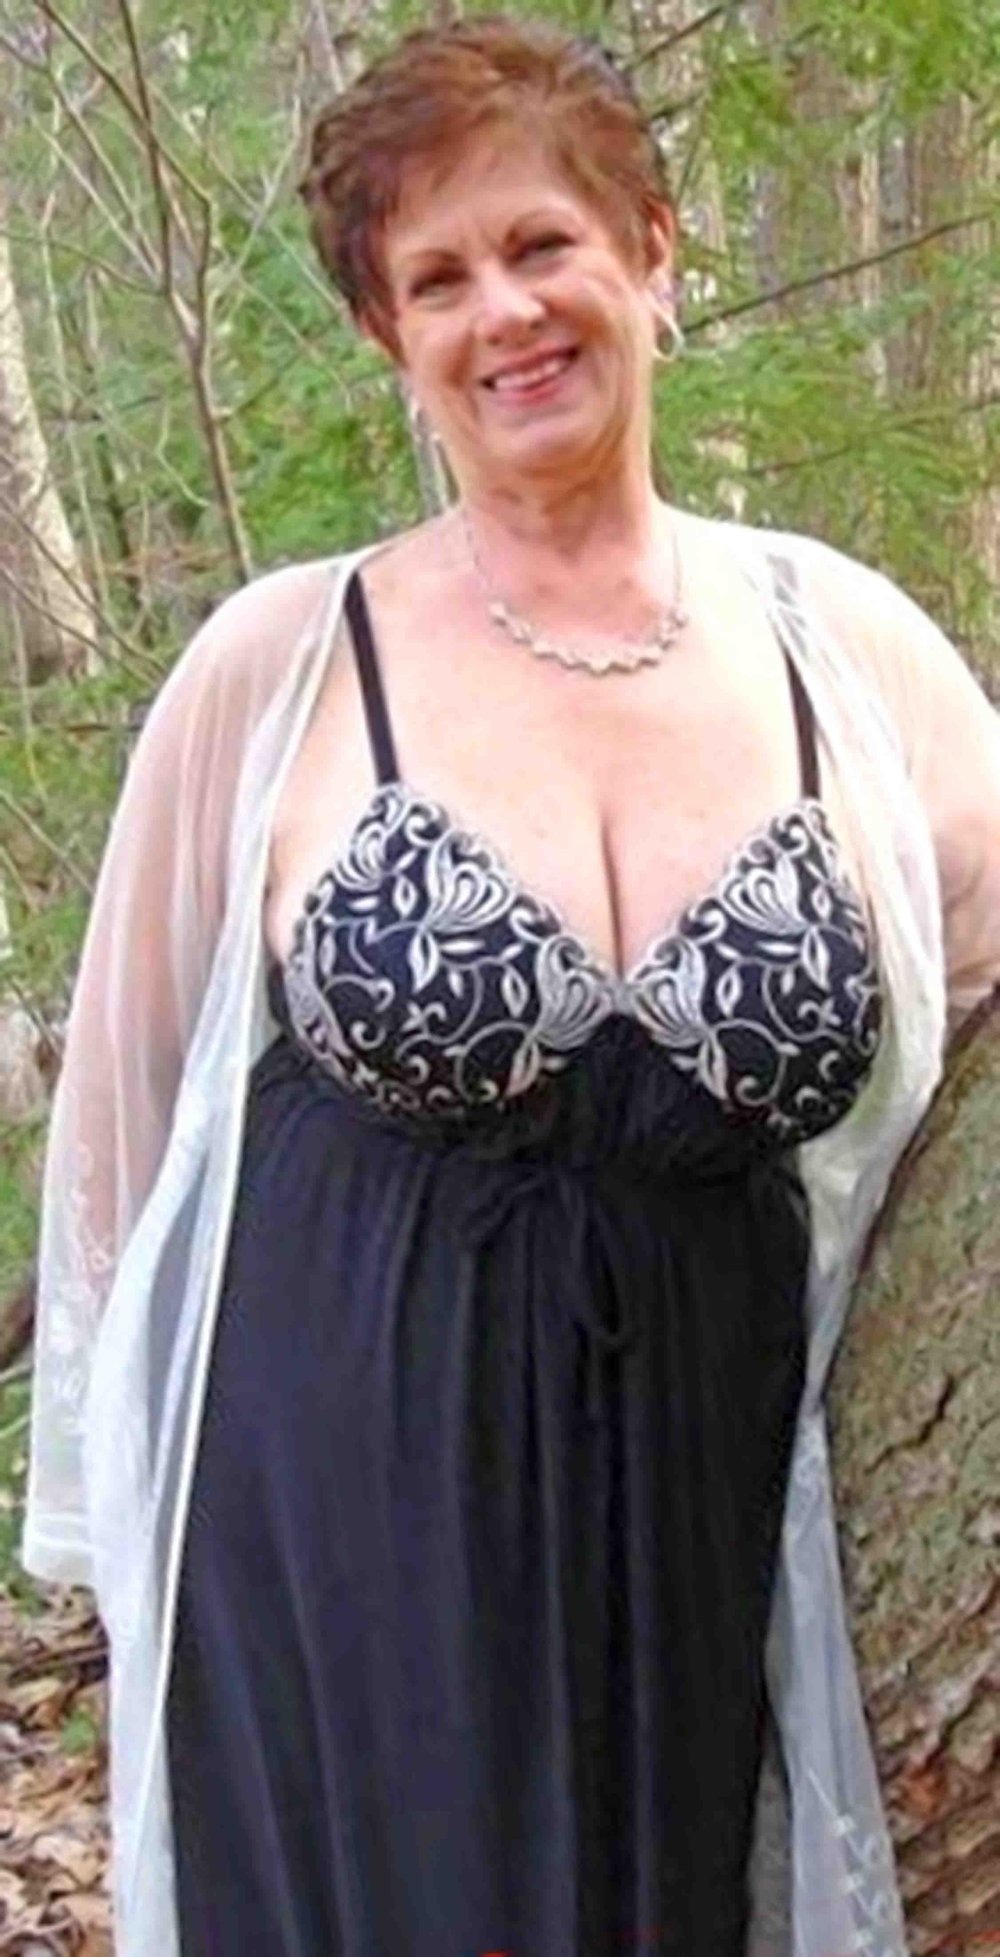 Pretty Granny Tits